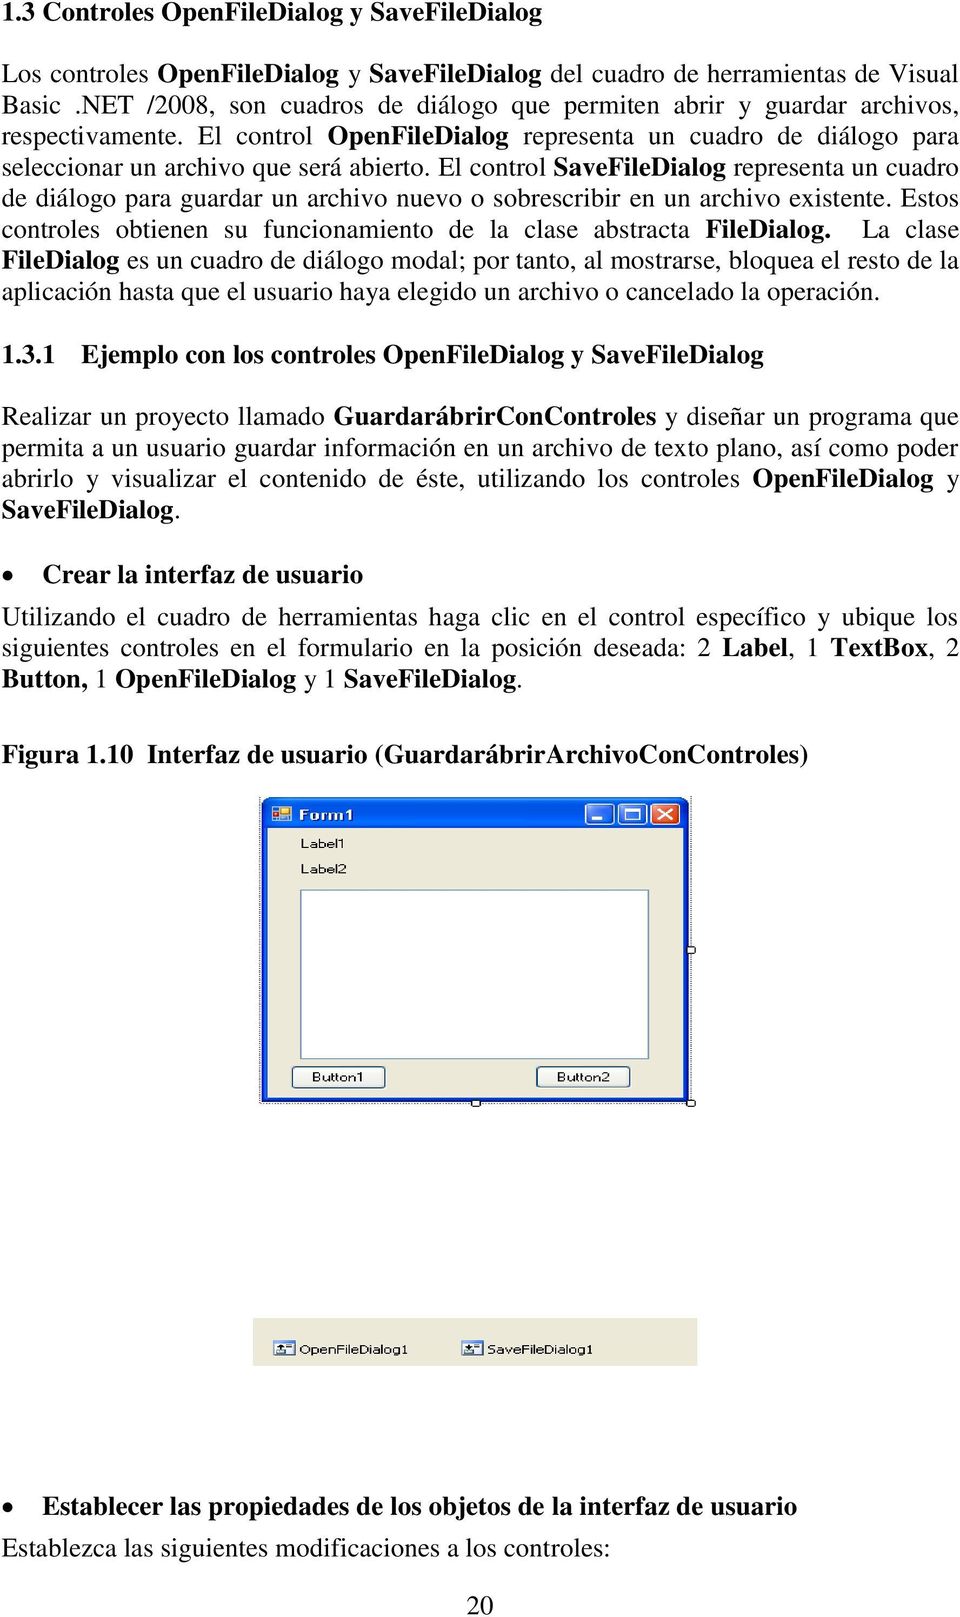 El control SaveFileDialog representa un cuadro de diálogo para guardar un archivo nuevo o sobrescribir en un archivo existente.